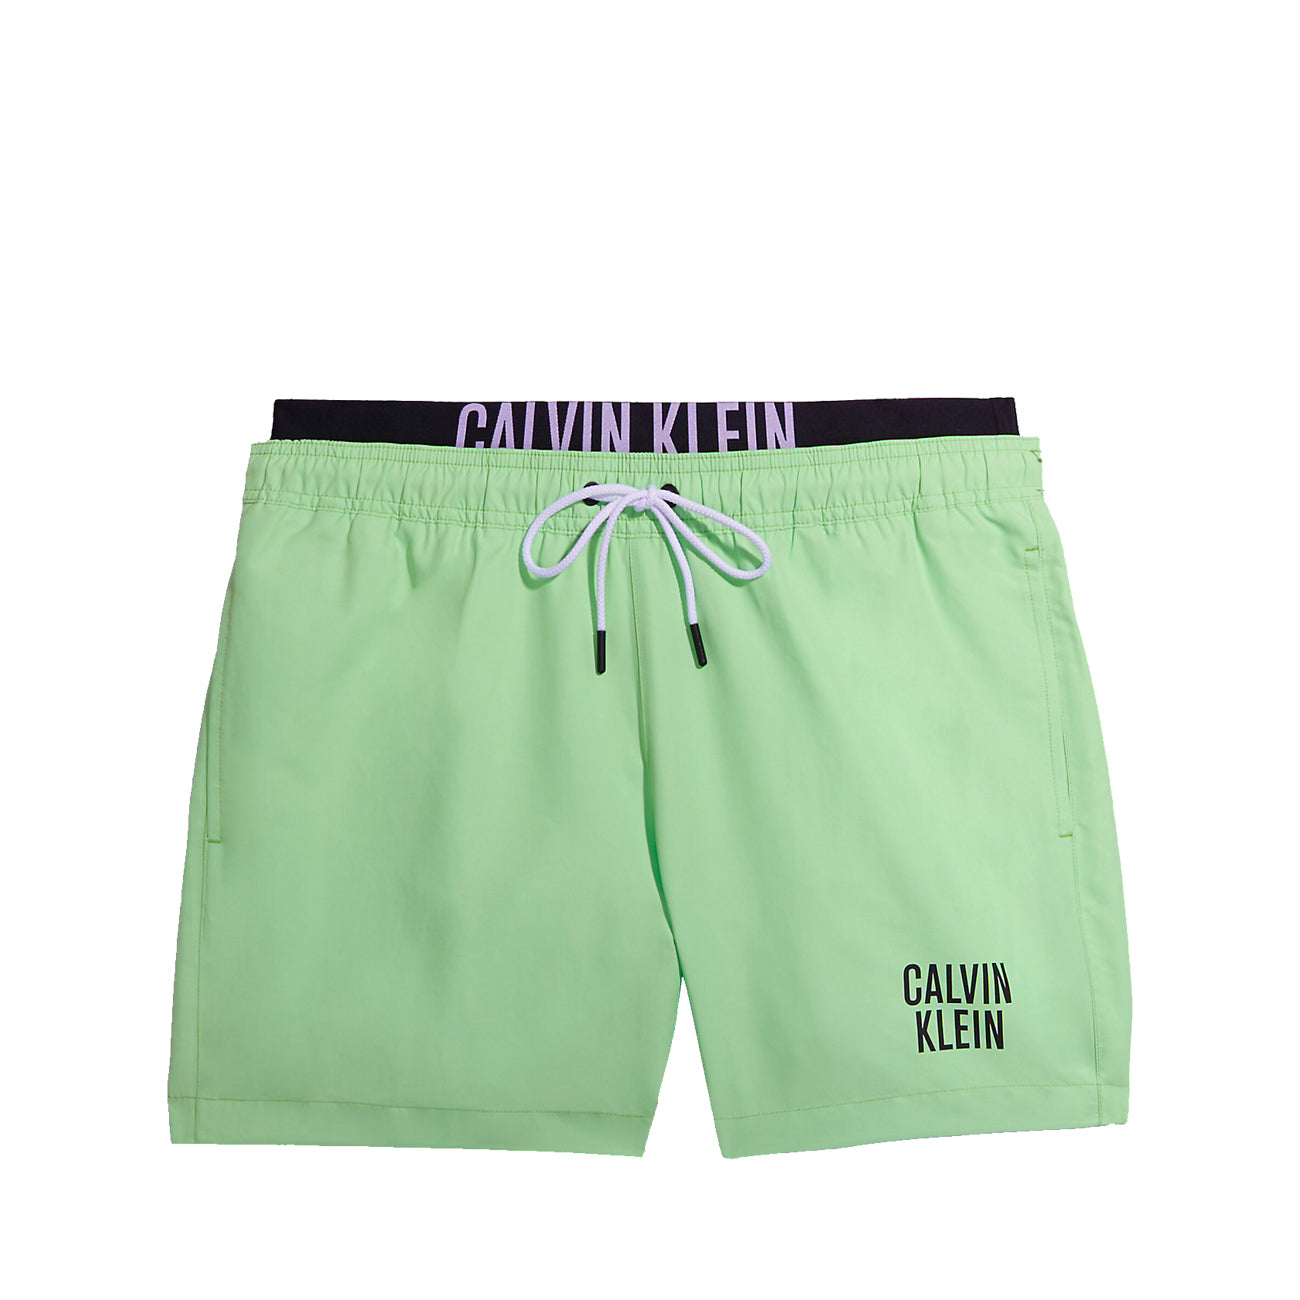 Calvin Klein Swimshort Medium Double WB Herren Badehose Lime Mist